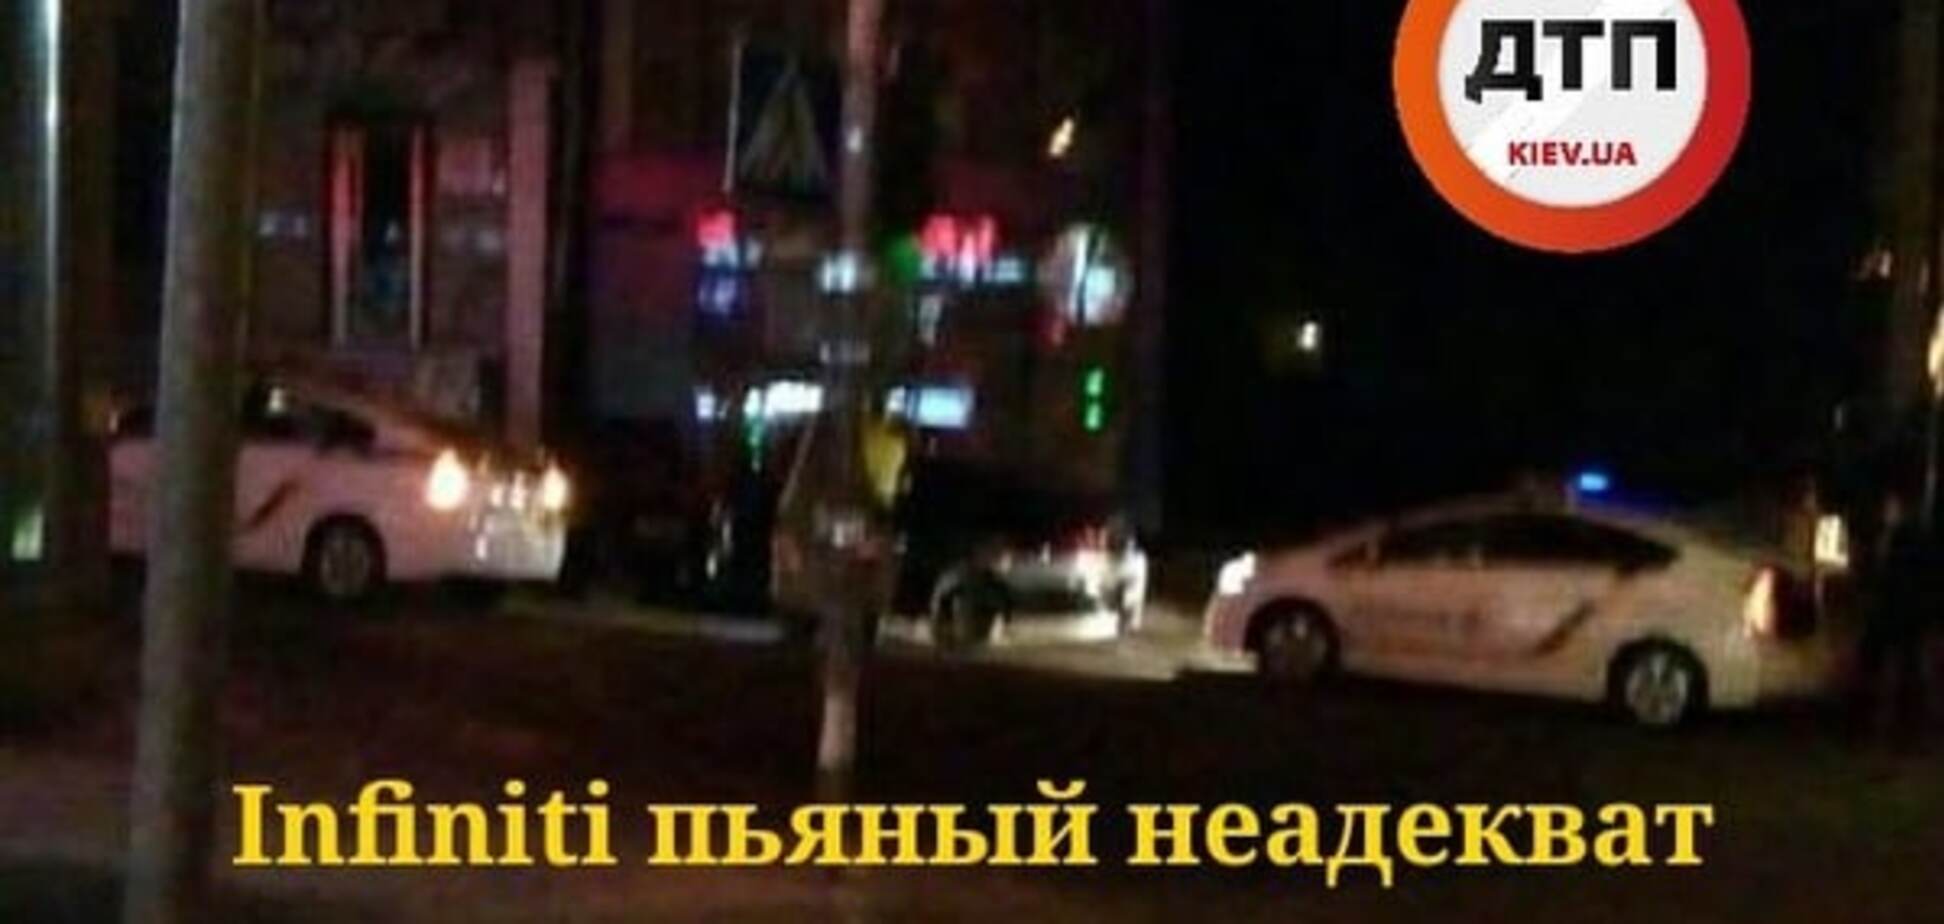 У Києві п'яна компанія на Infiniti намагалася обдурити копів